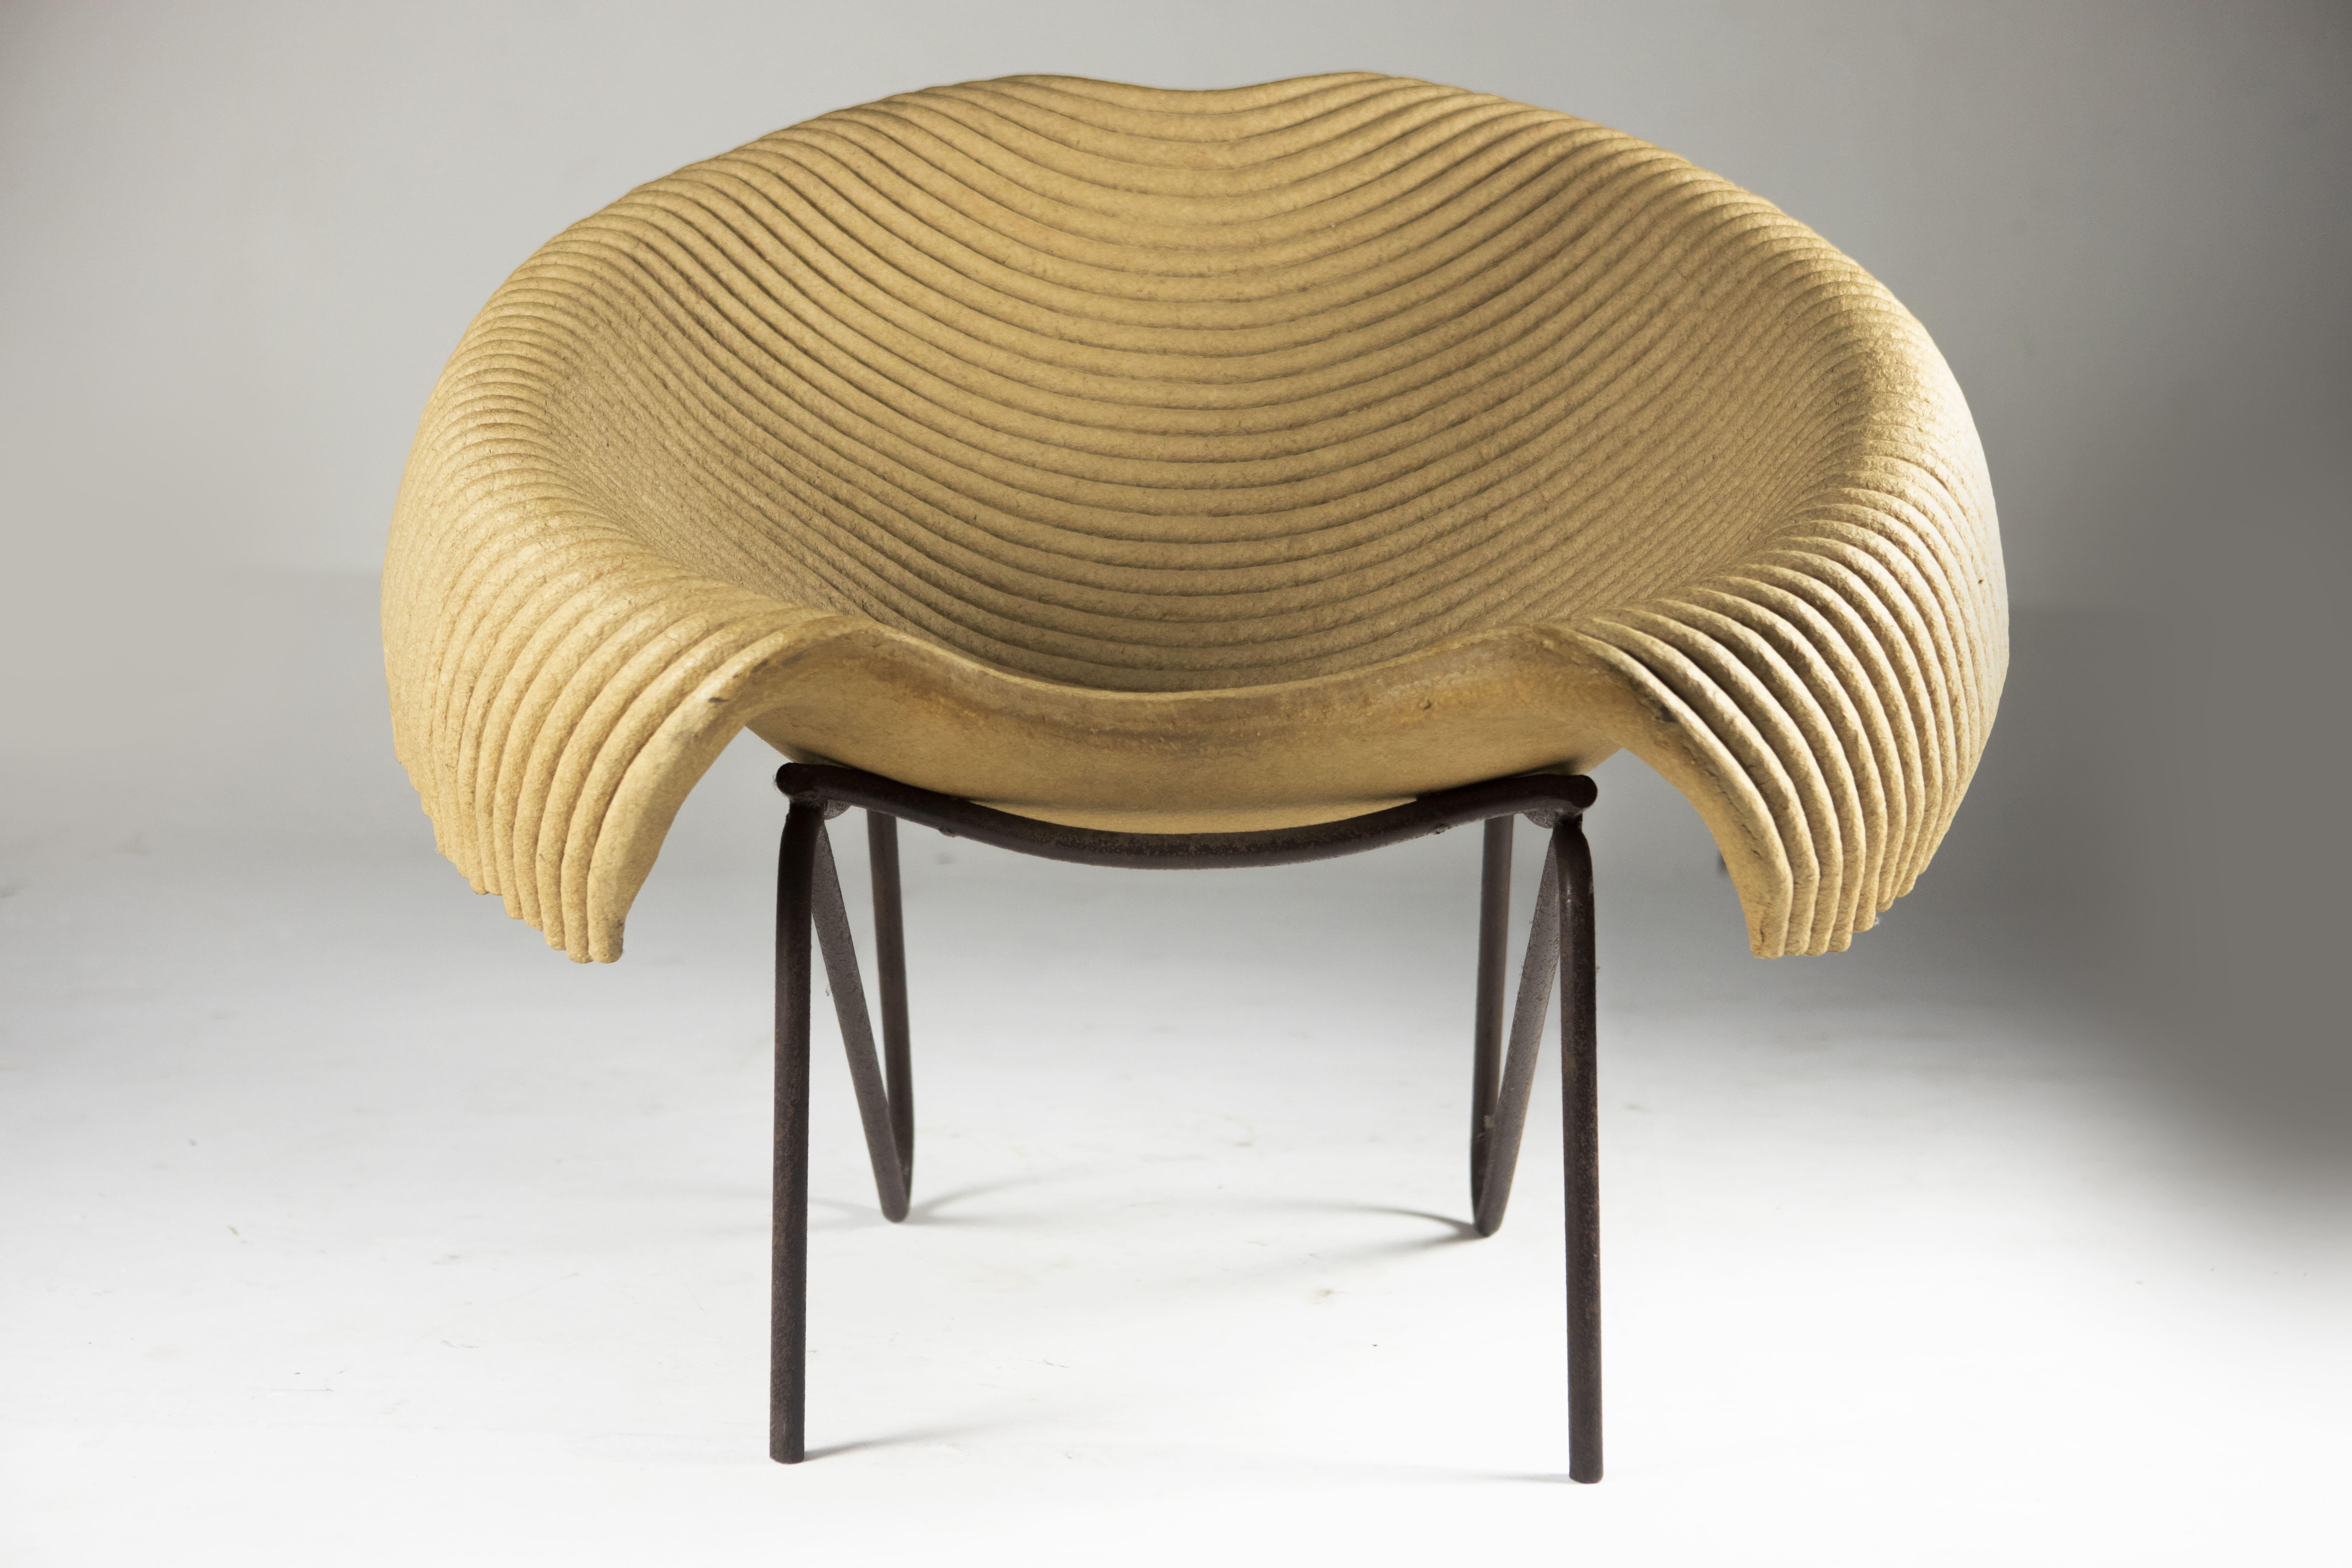 La chaise longue contemporaine Leiras de Domingo/One est un exemple étonnant de l'engagement du designer en faveur de la durabilité et de l'innovation. La chaise est entièrement fabriquée à partir de carton recyclé, qui a été soigneusement superposé